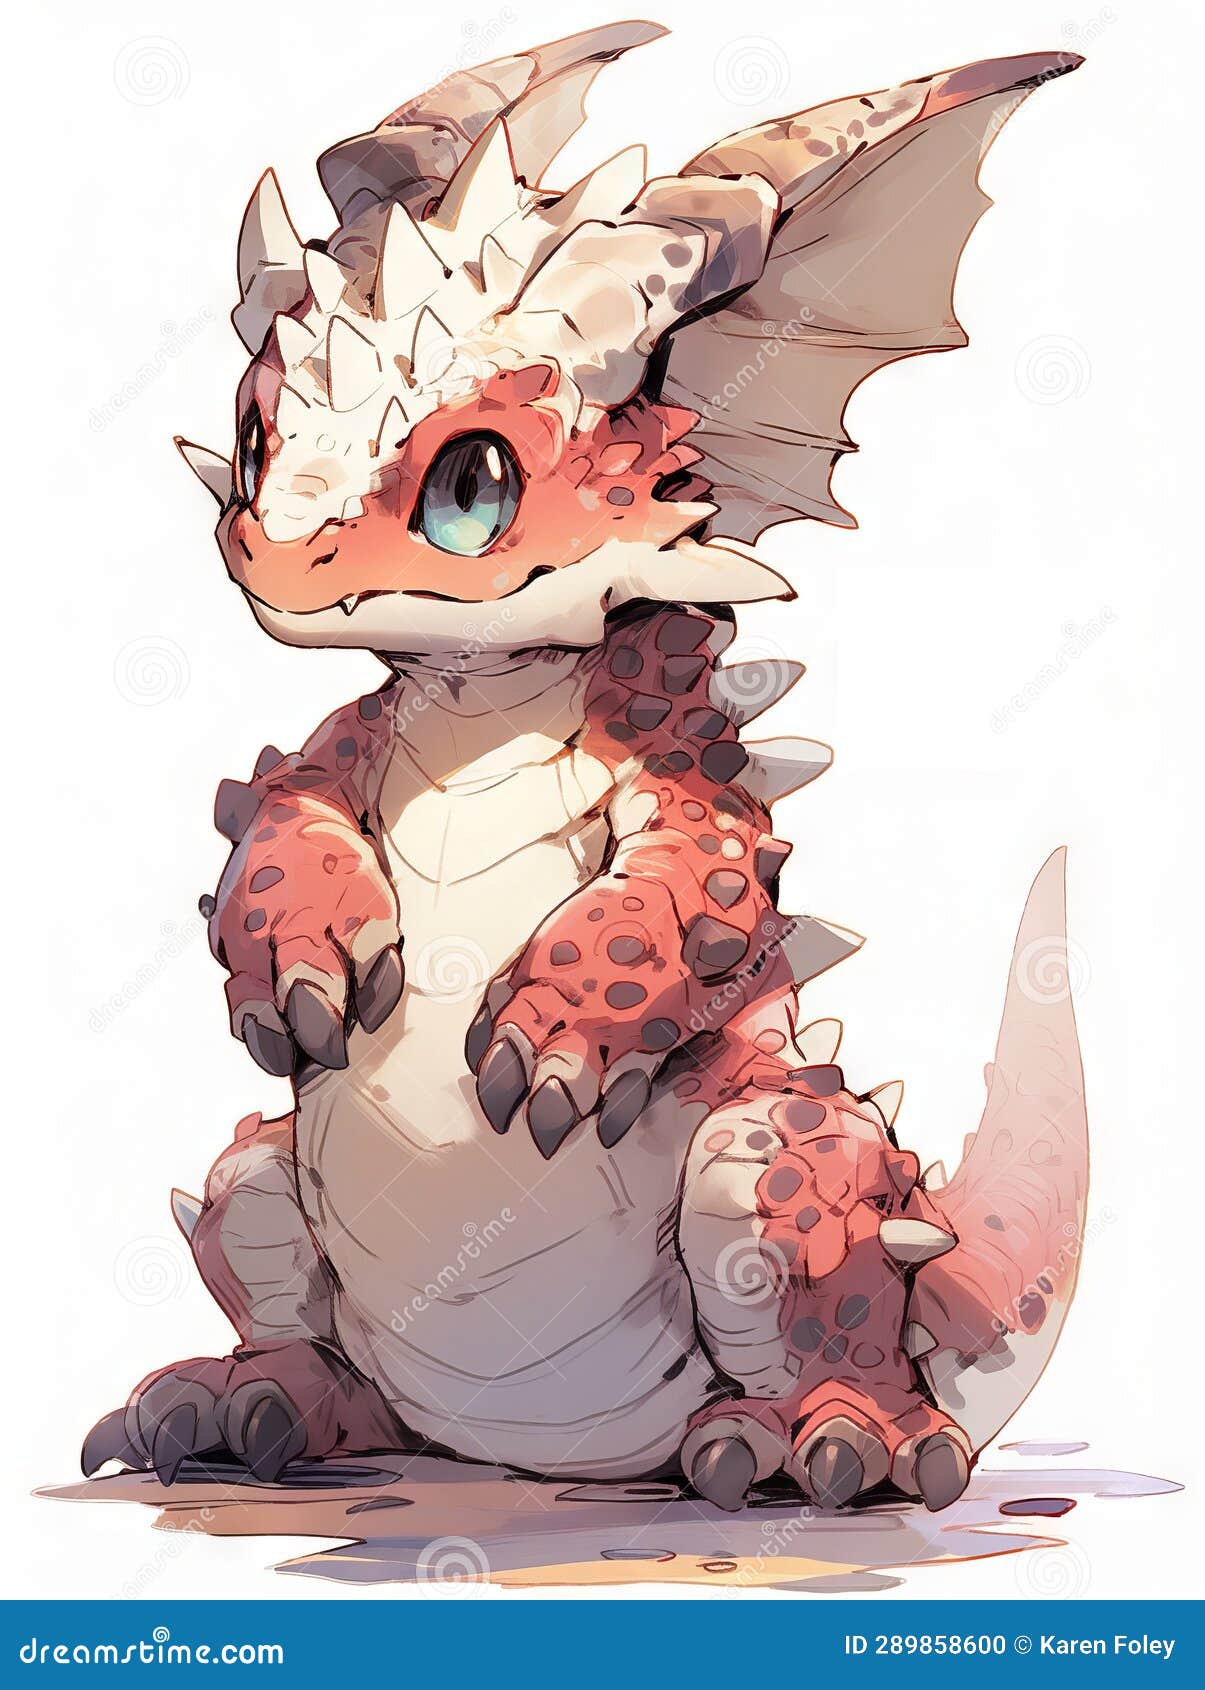 Cute Anime Dragons 3d model - CadNav